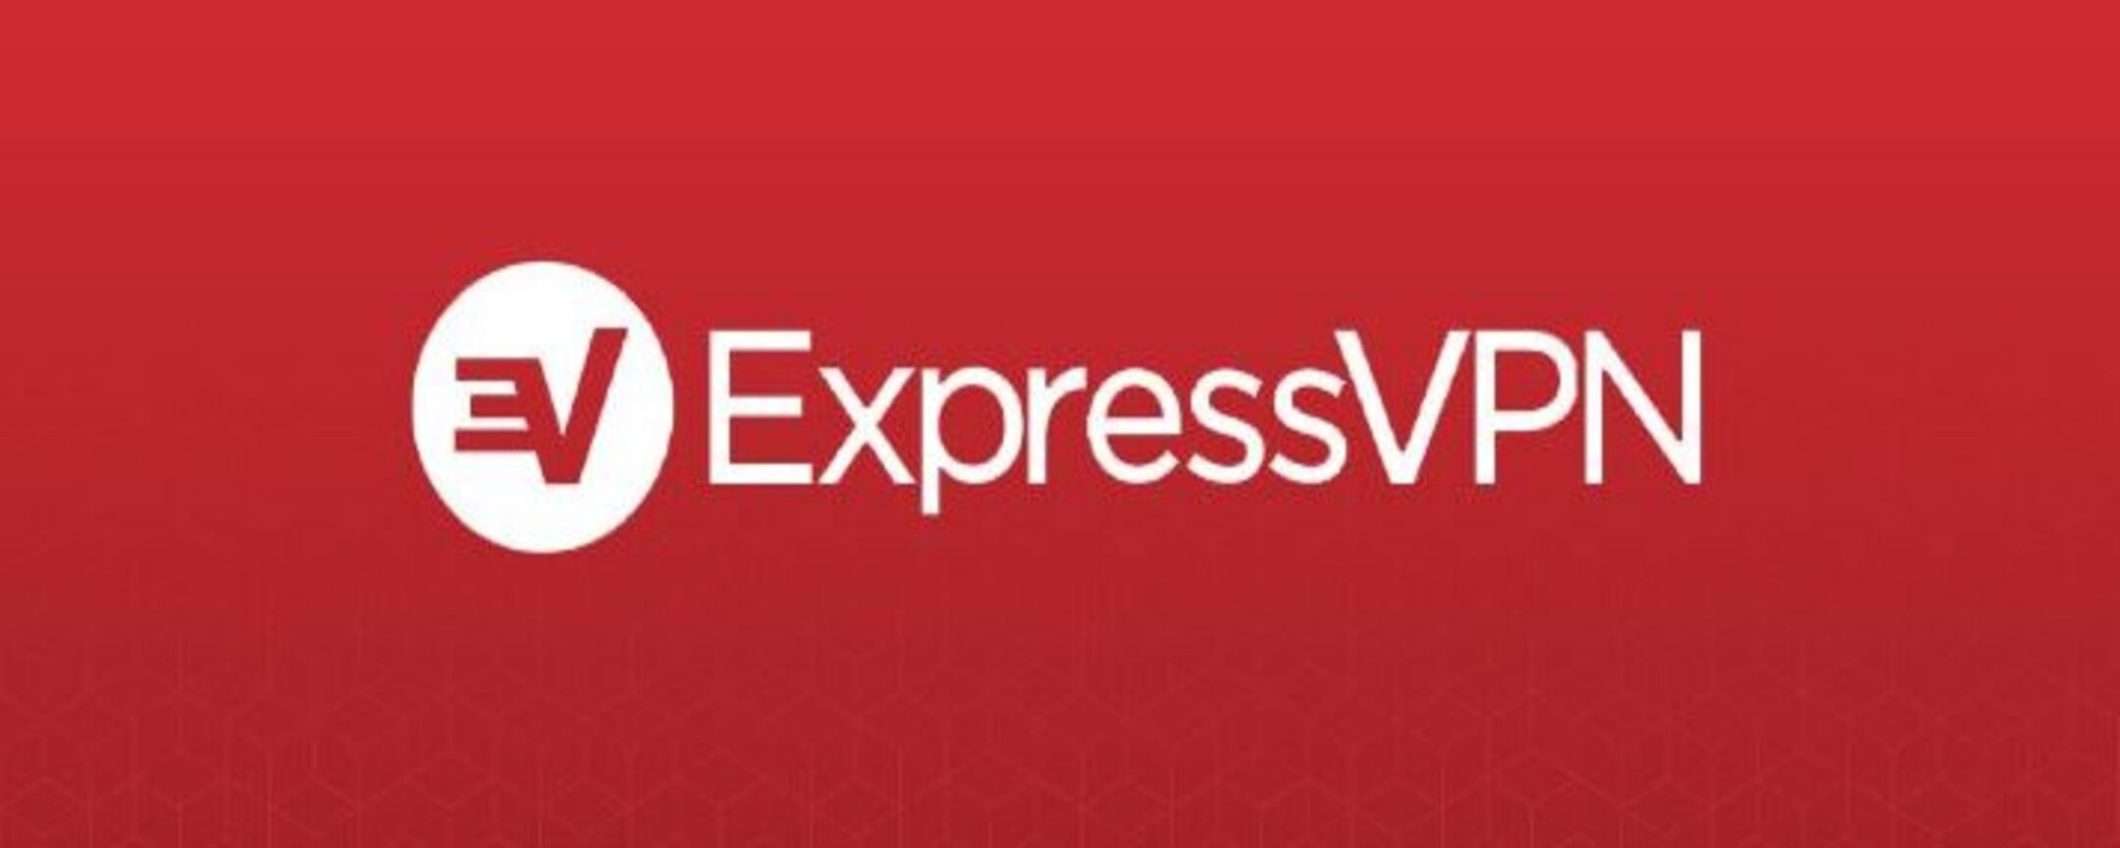 La VPN più veloce del mercato? ExpressVPN